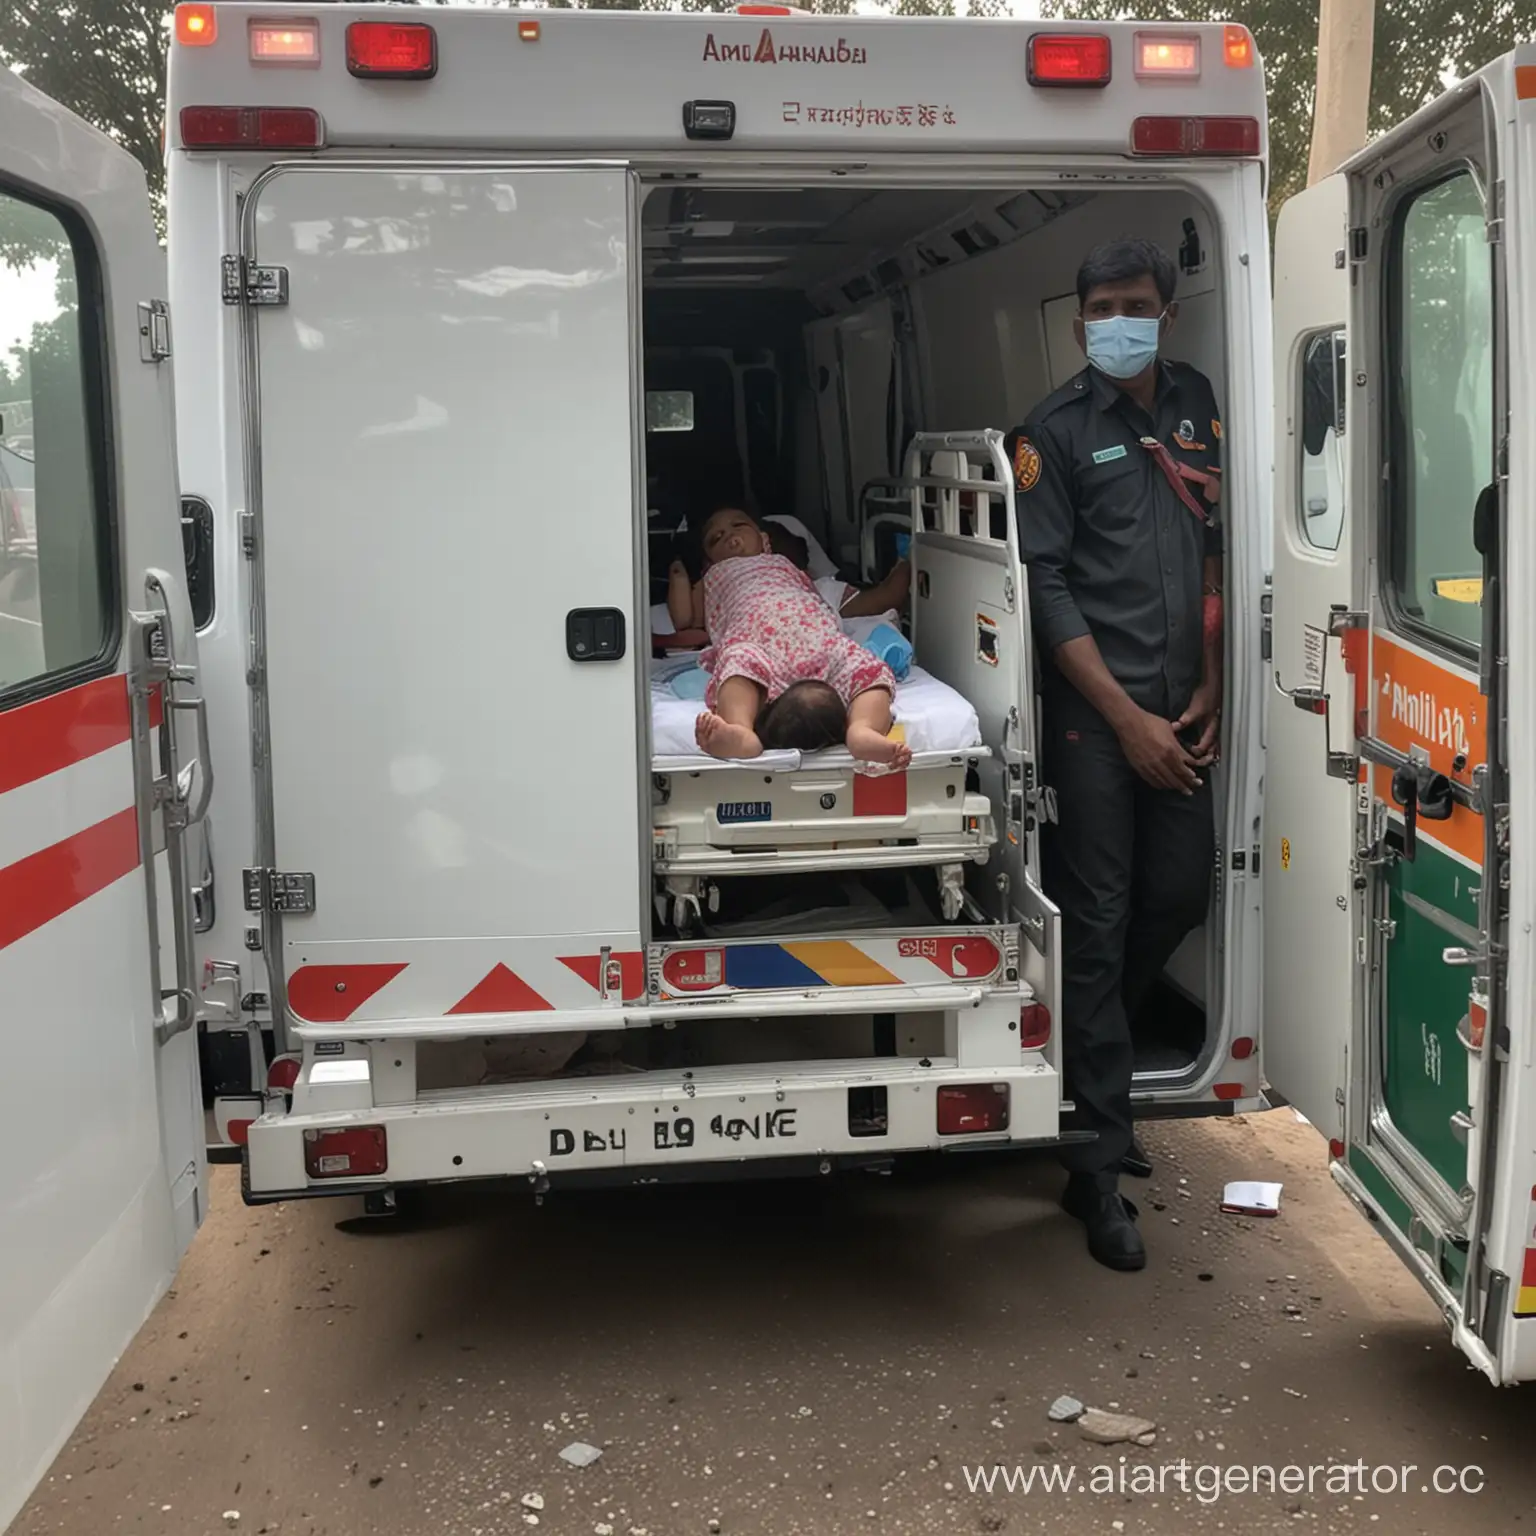 двухлетнюю девочку везут в скорой с отравлением ,фото внутри машины скорой помощи